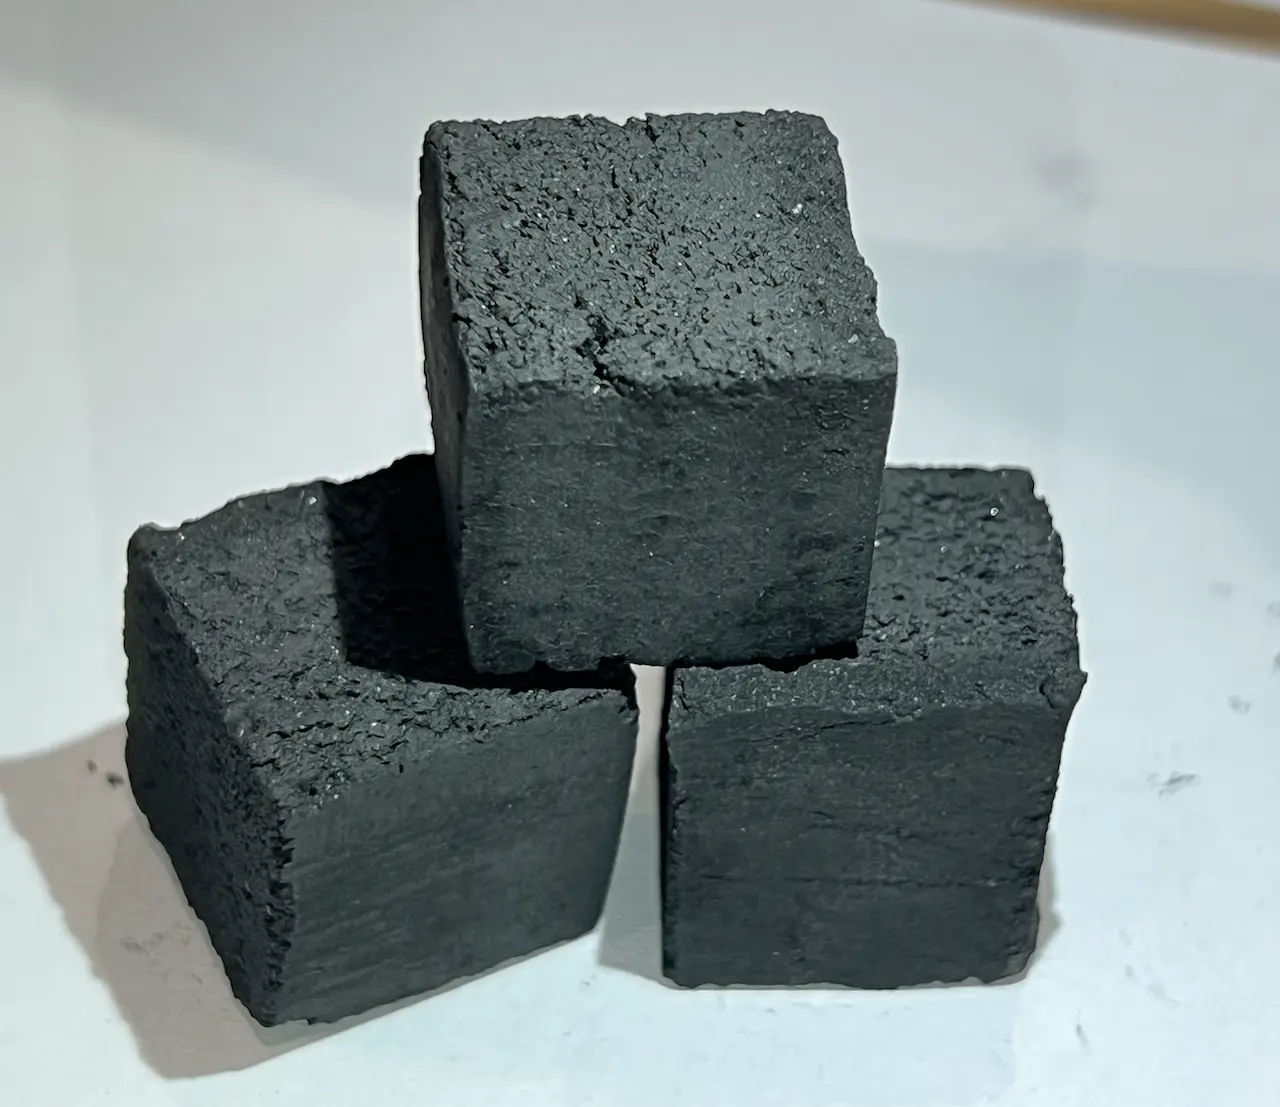 פיירמקס הגעה חדשה פגז קוקוס קוביית פחם קוקו ללא עשן מוצק שישה brquettes קונים באירופה